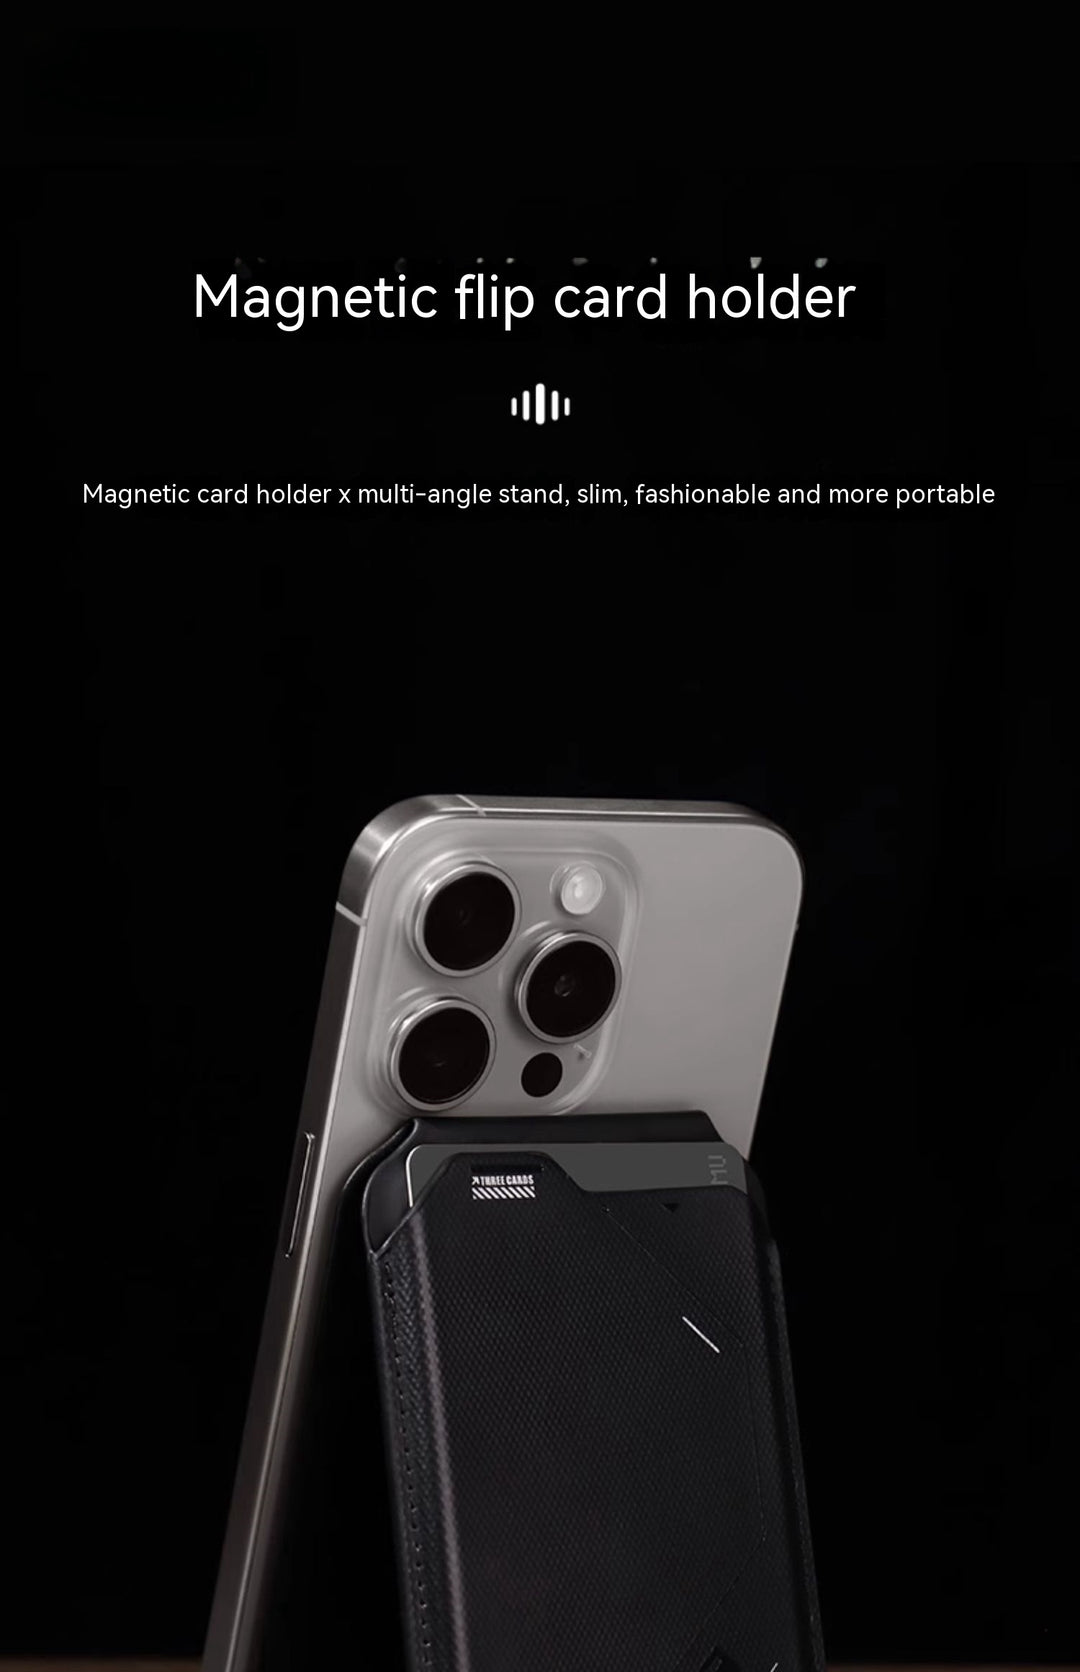 磁気フリップカードホルダーG02ツーインワンウォレットマルチアングル折りたたみ携帯電話ホルダーウルトラシンポータブル